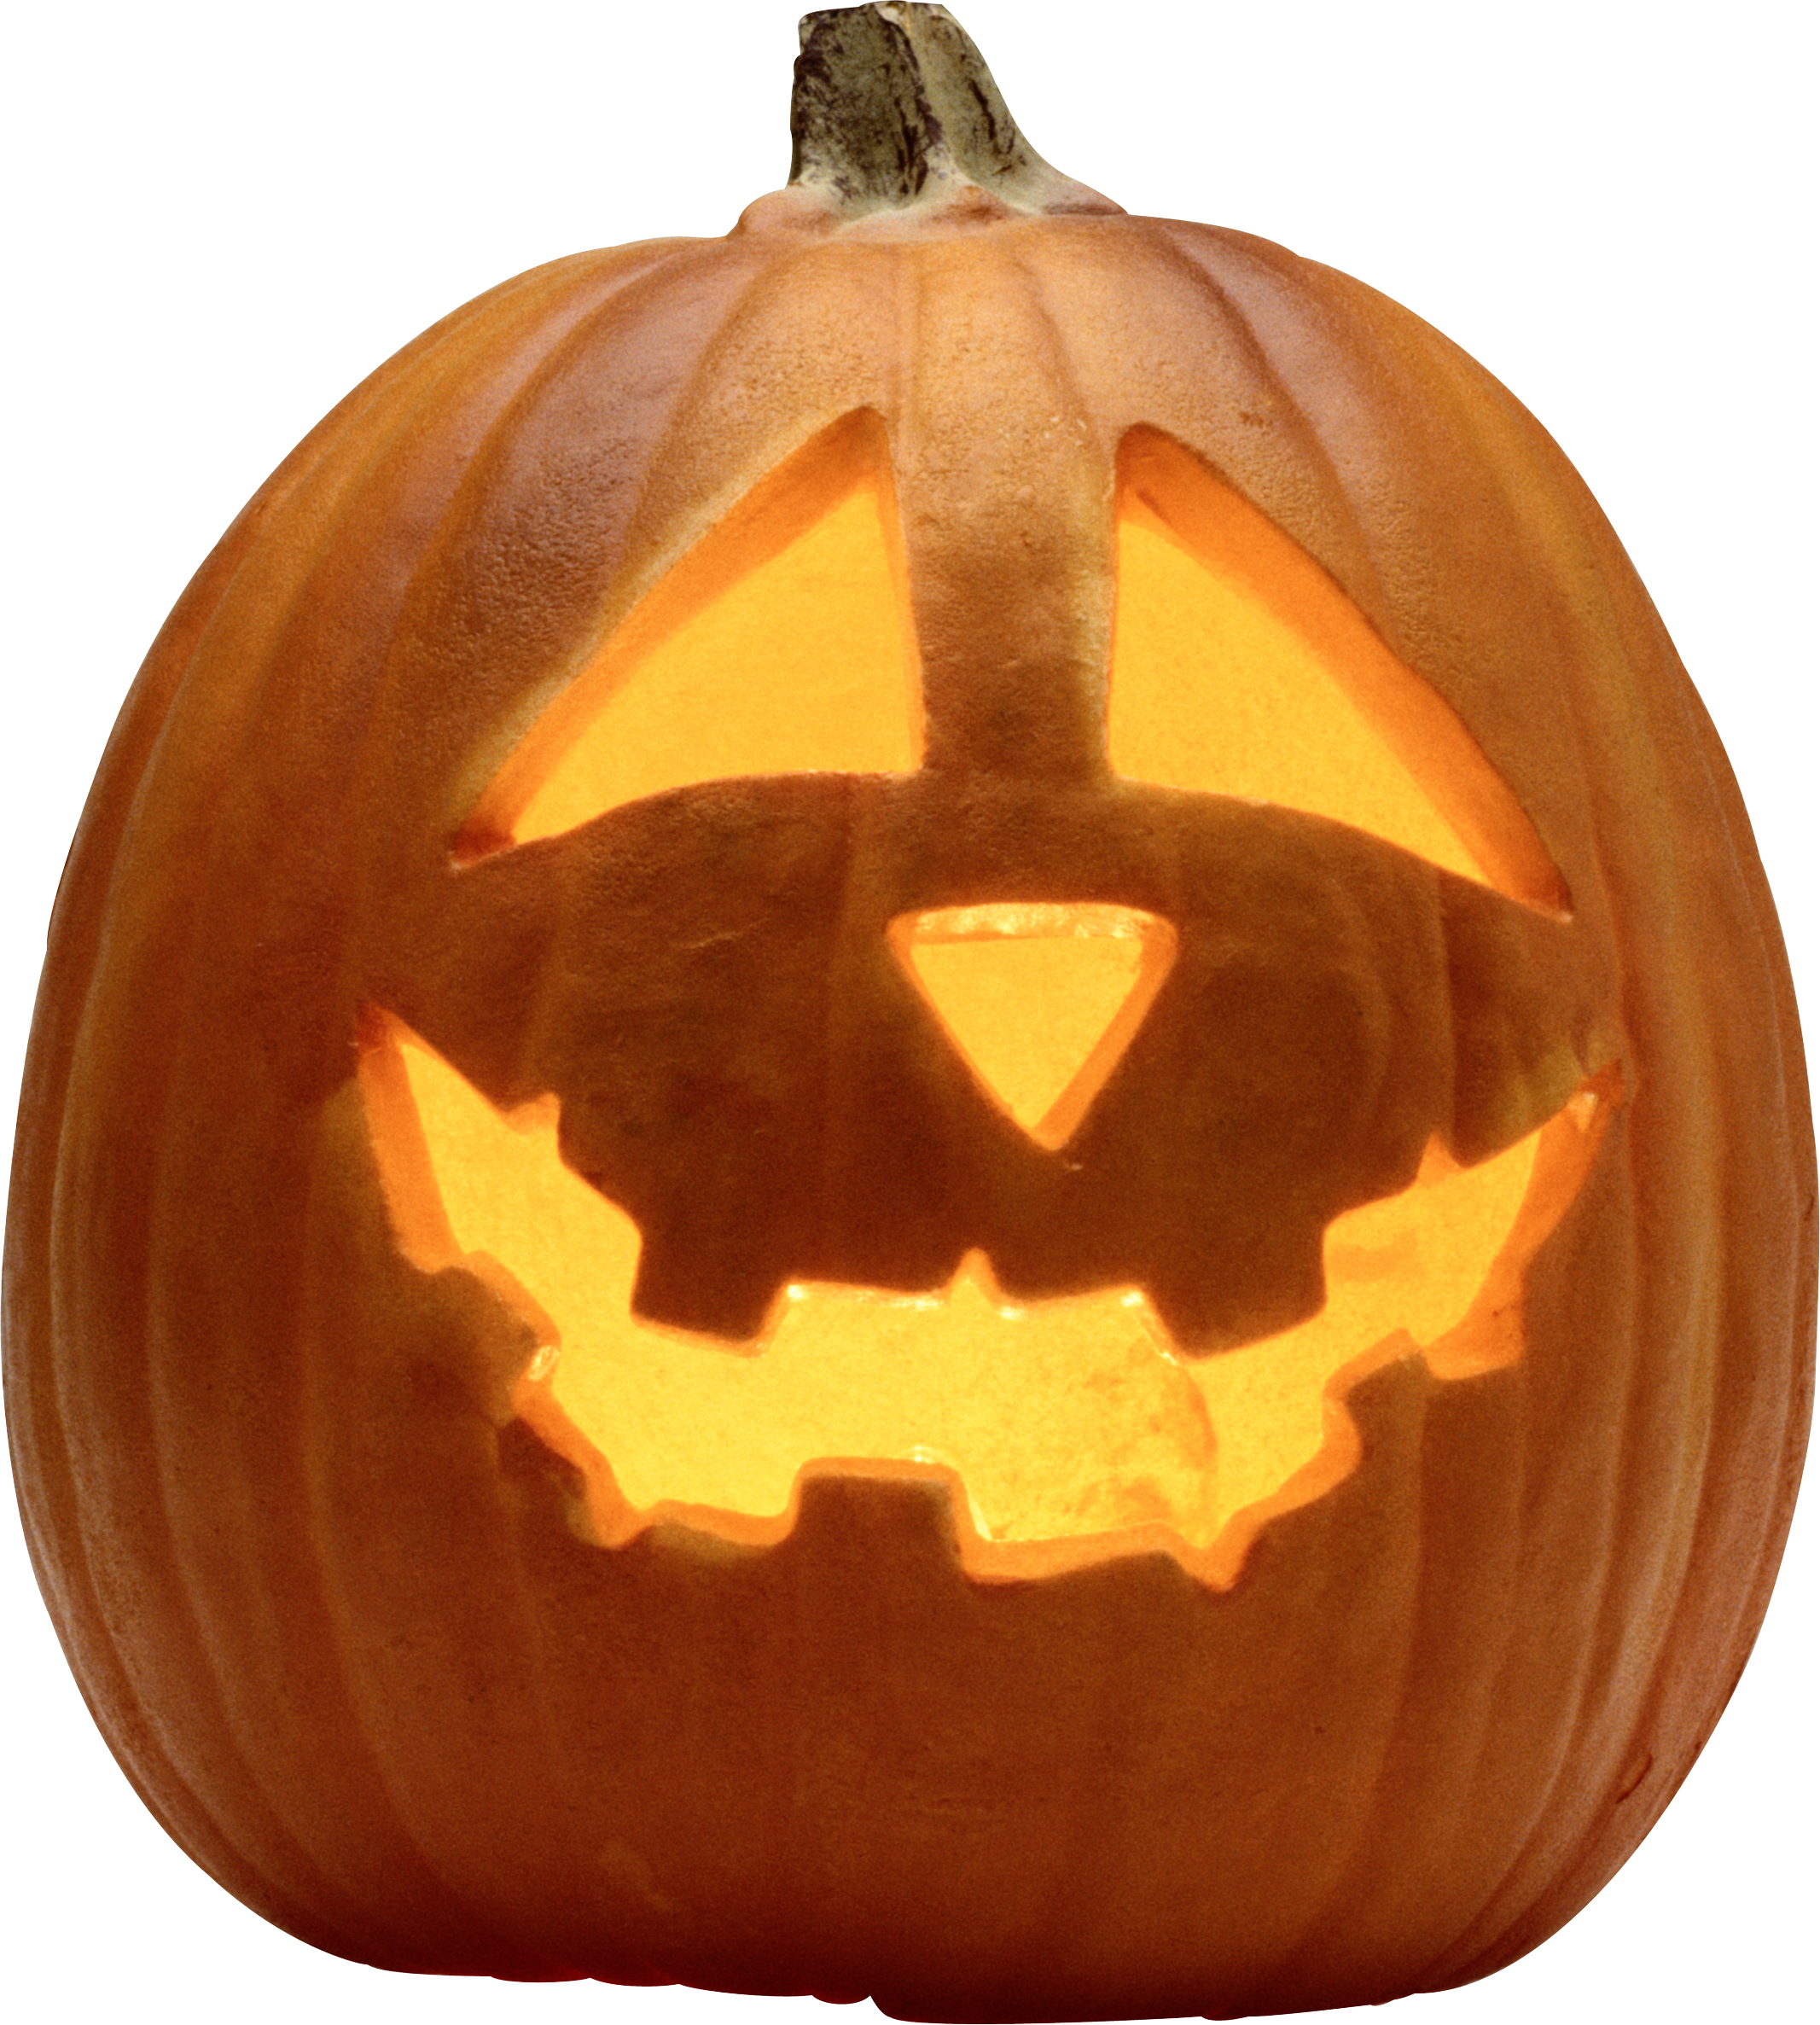 Halloween Carved Pumpkin Transparent Image